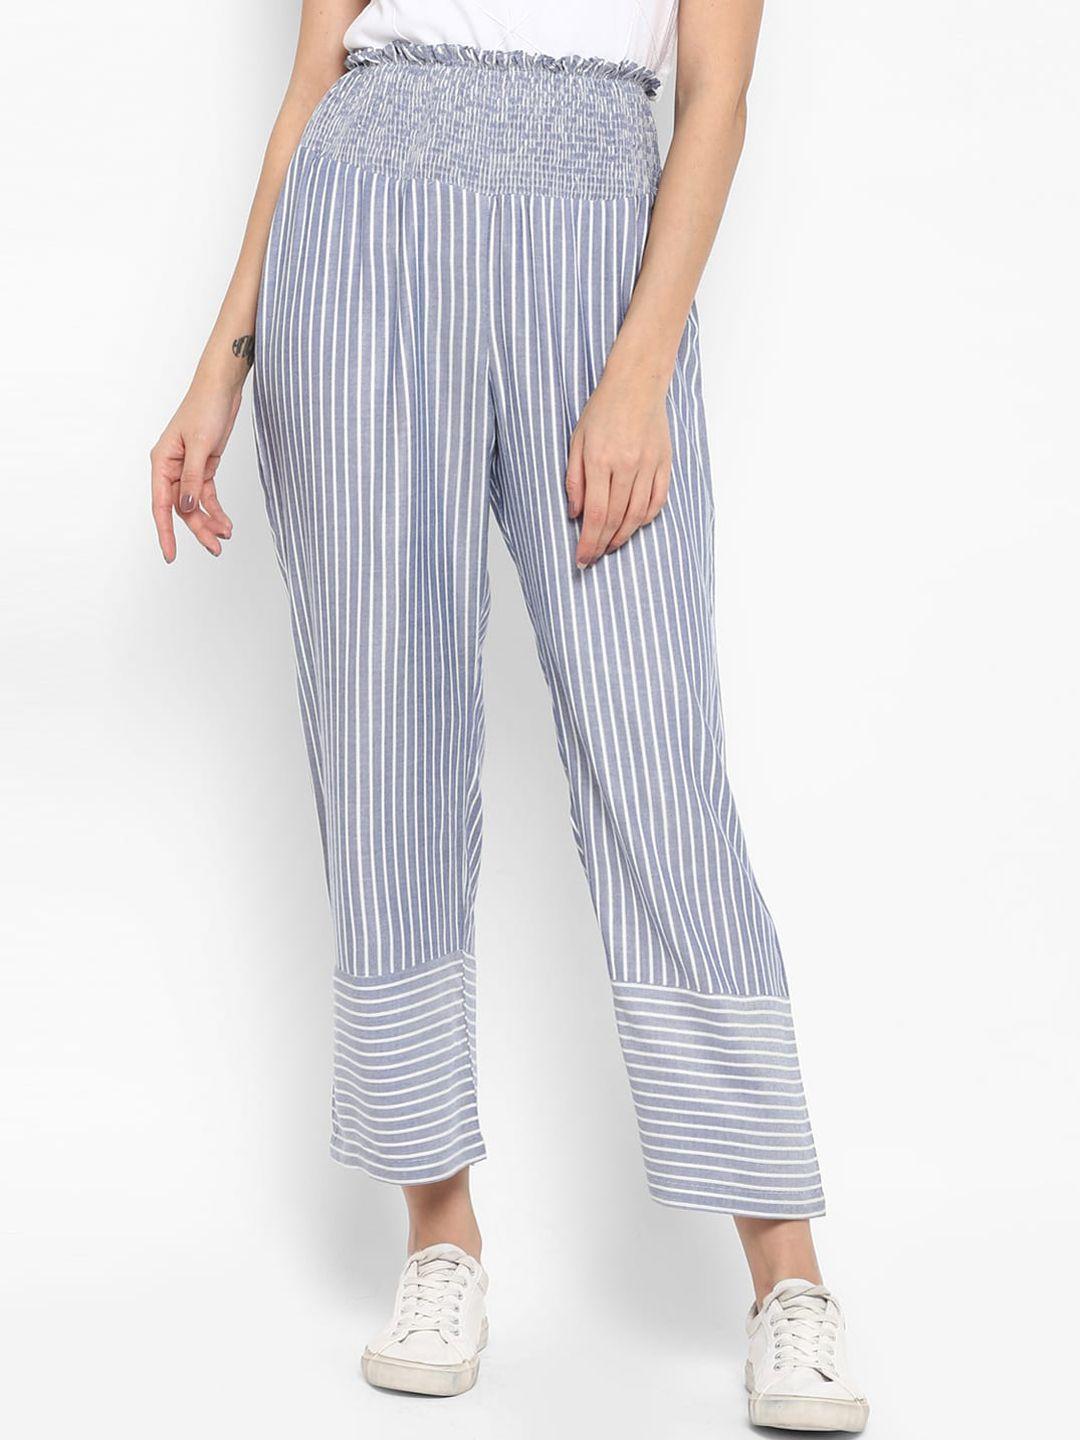 deebaco women blue striped loose fit pleated regular trousers